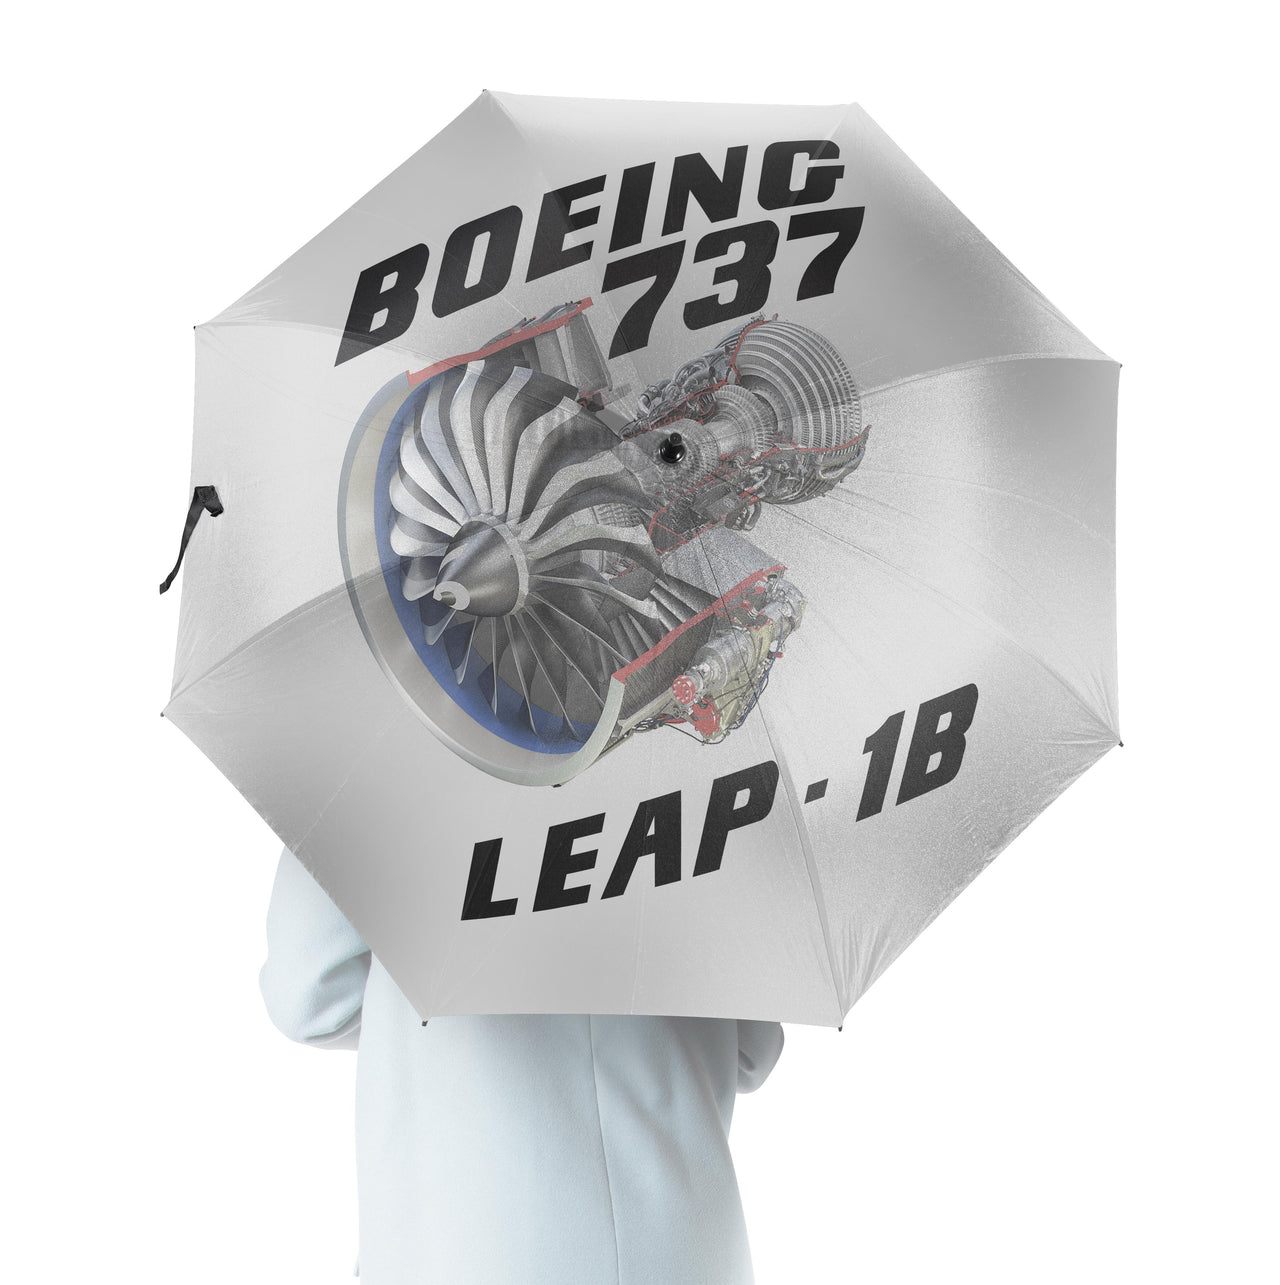 Boeing 737 & Leap 1B Designed Umbrella